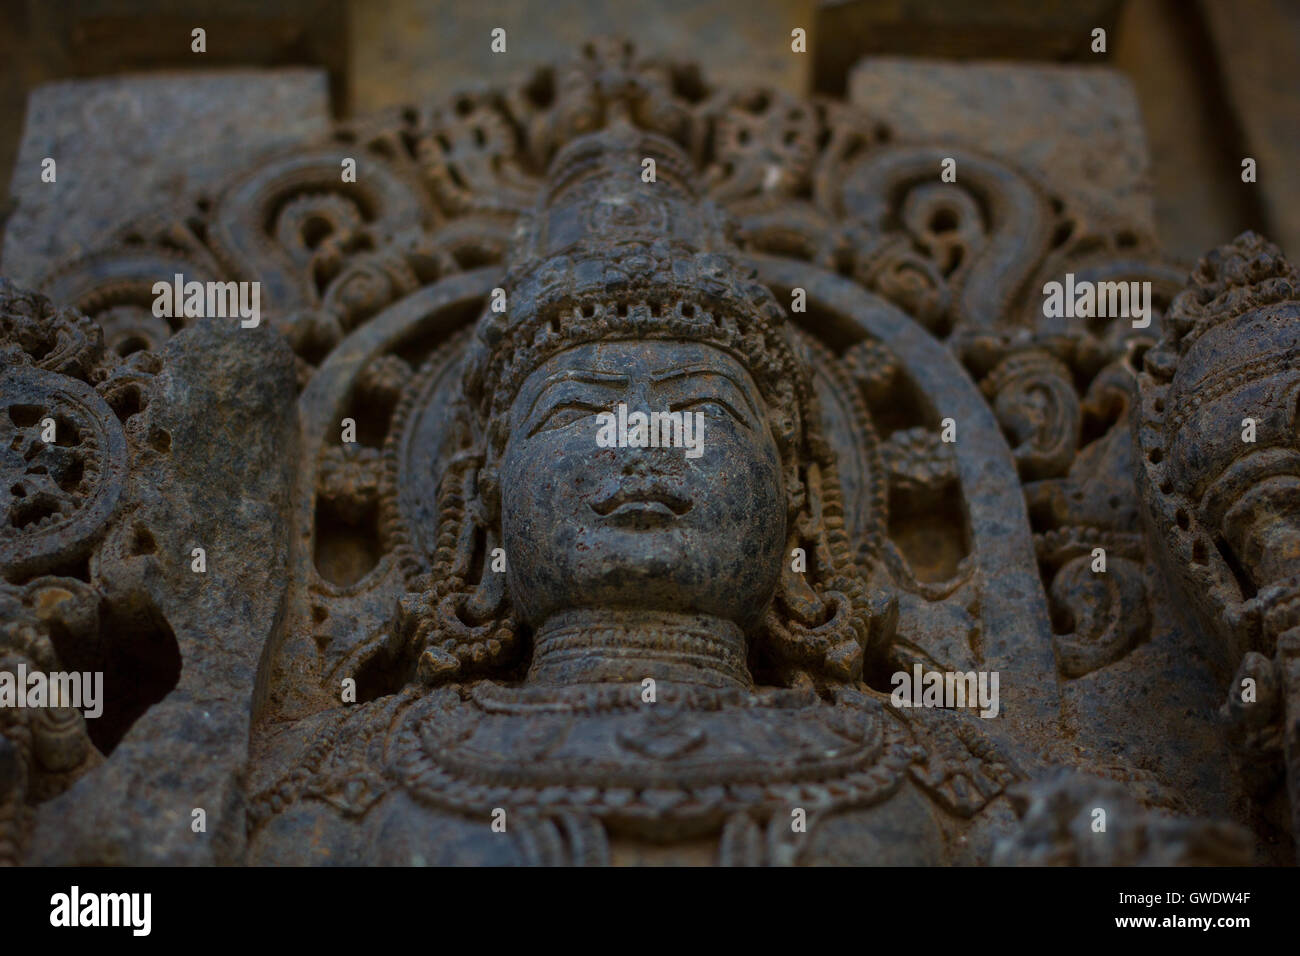 Close up de la déité sculpture sur la paroi extérieure de culte dans le temple de Chennakesava Somanathapura, Karnataka, Inde, Asie Banque D'Images